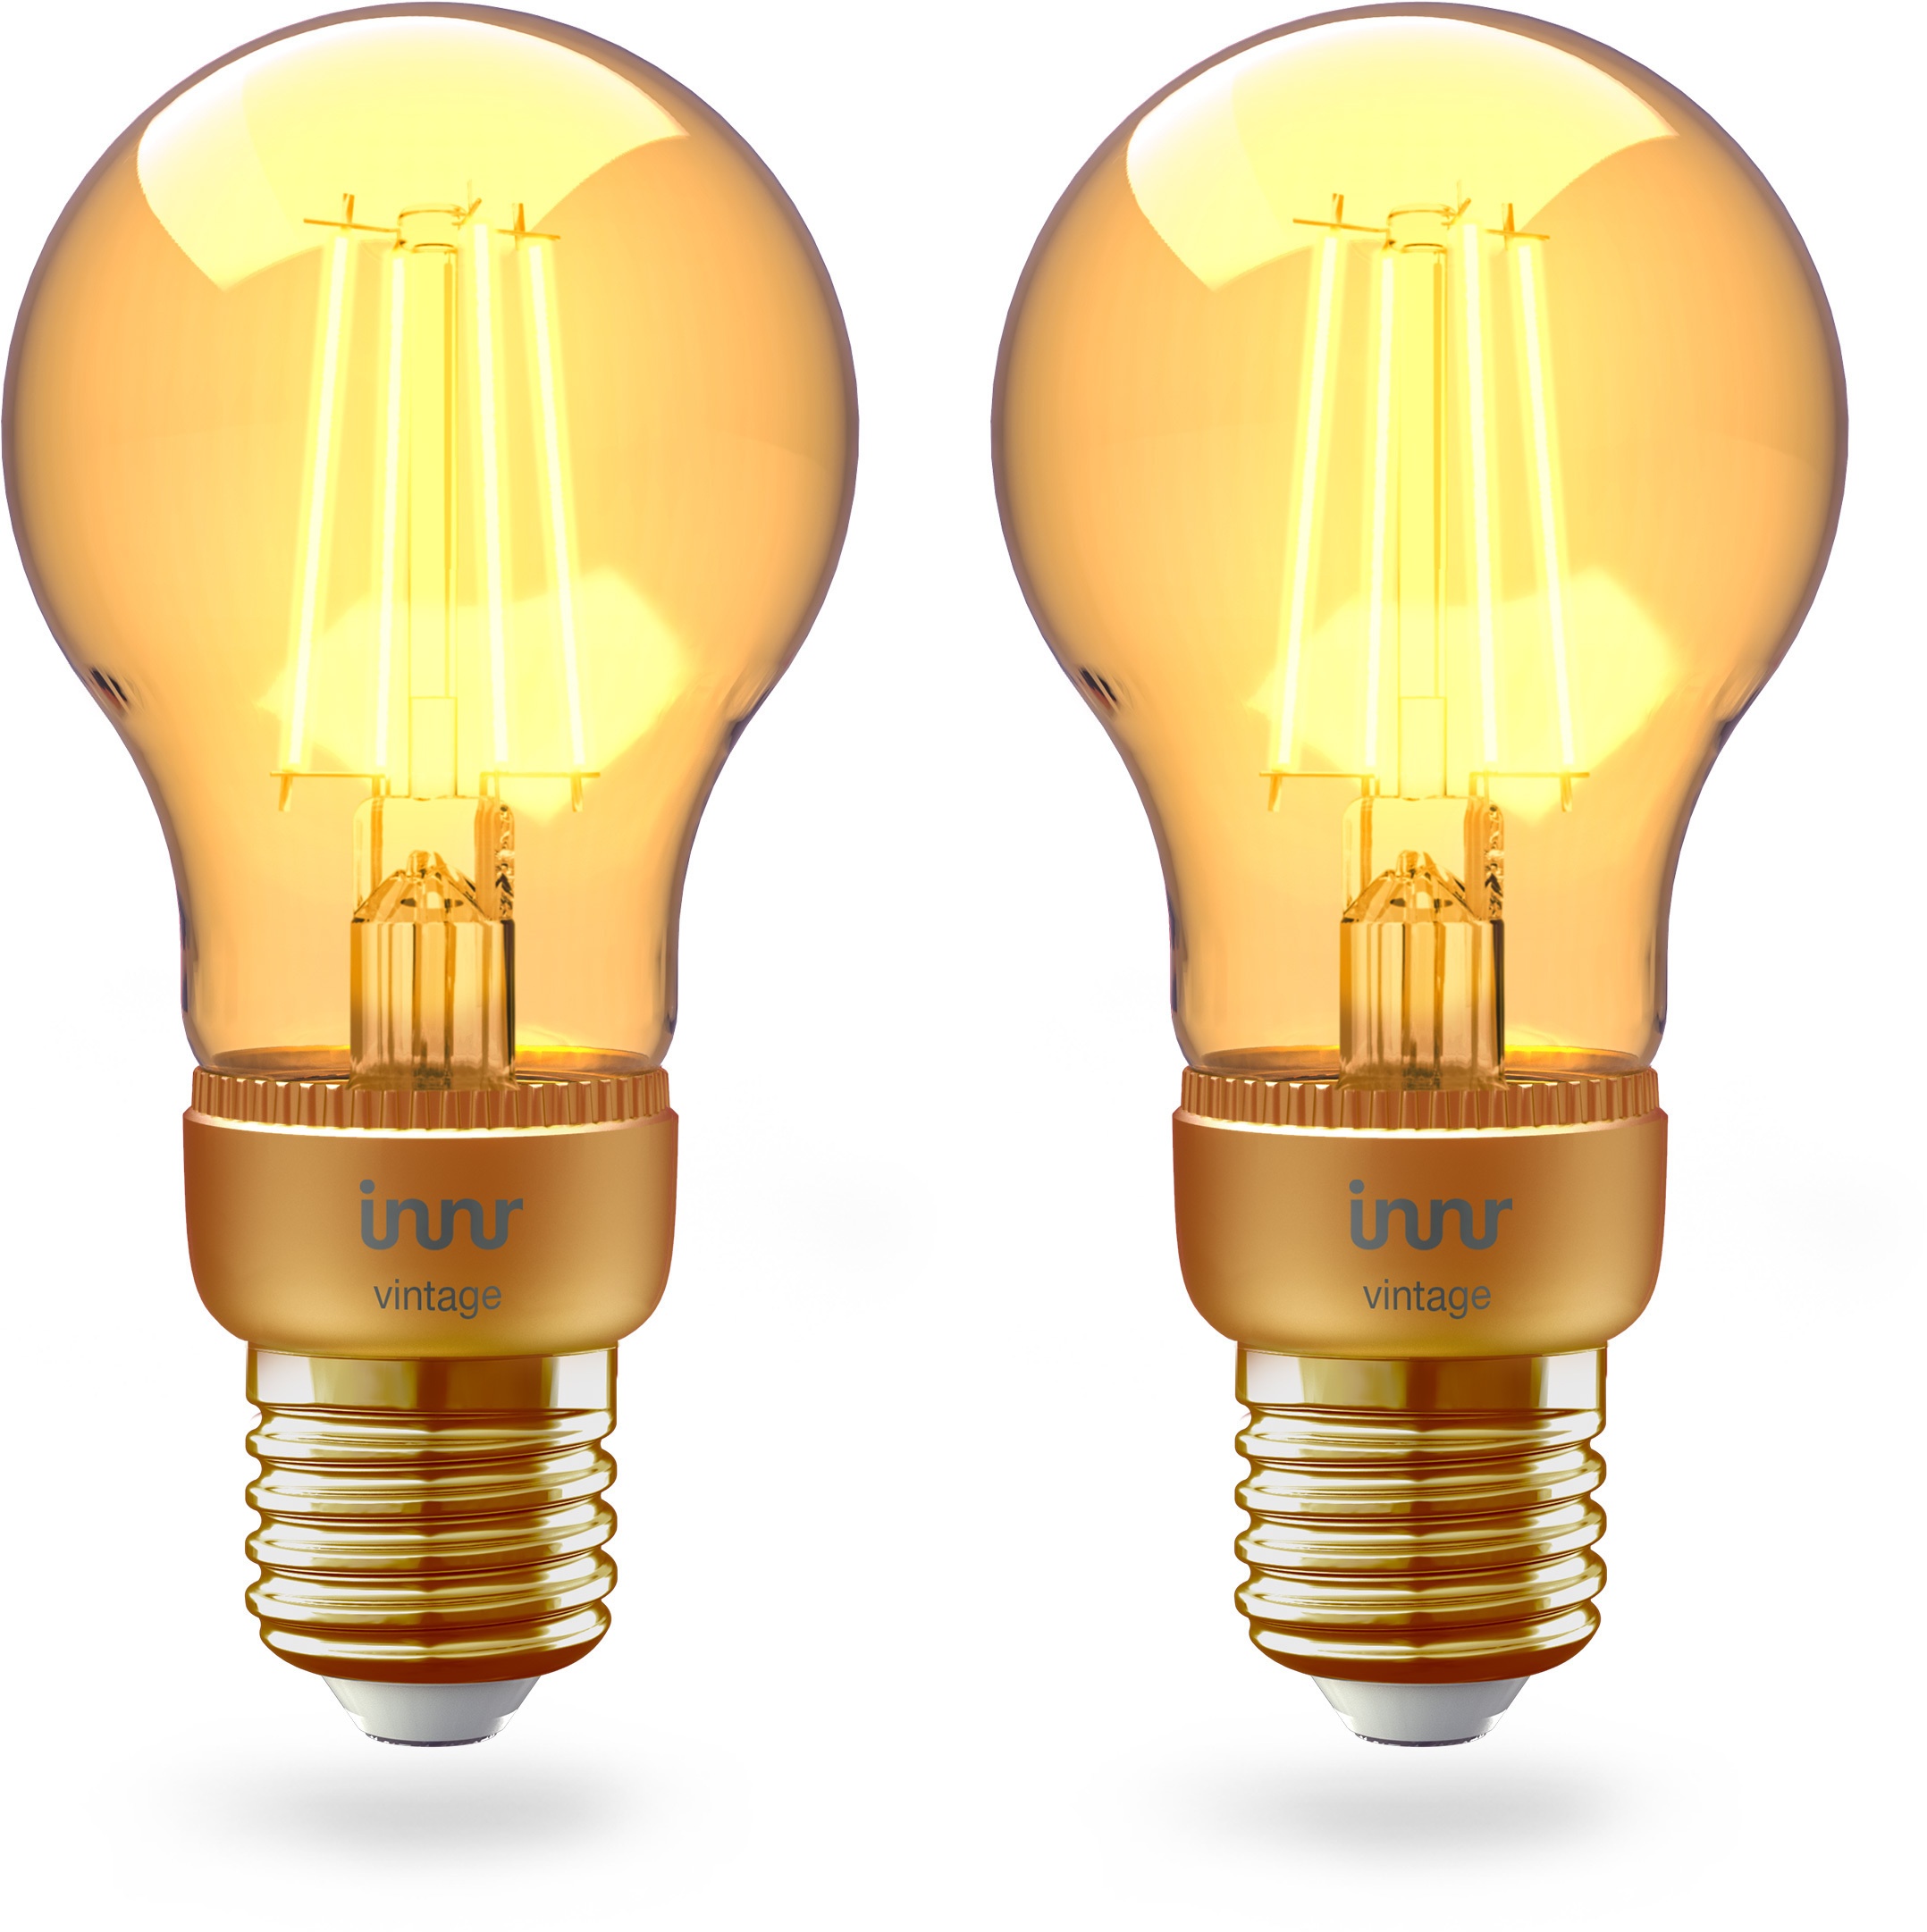 Innr E27 Smart Filament LED Lampe 2x 2er Pack Bundle Vintage Lampe